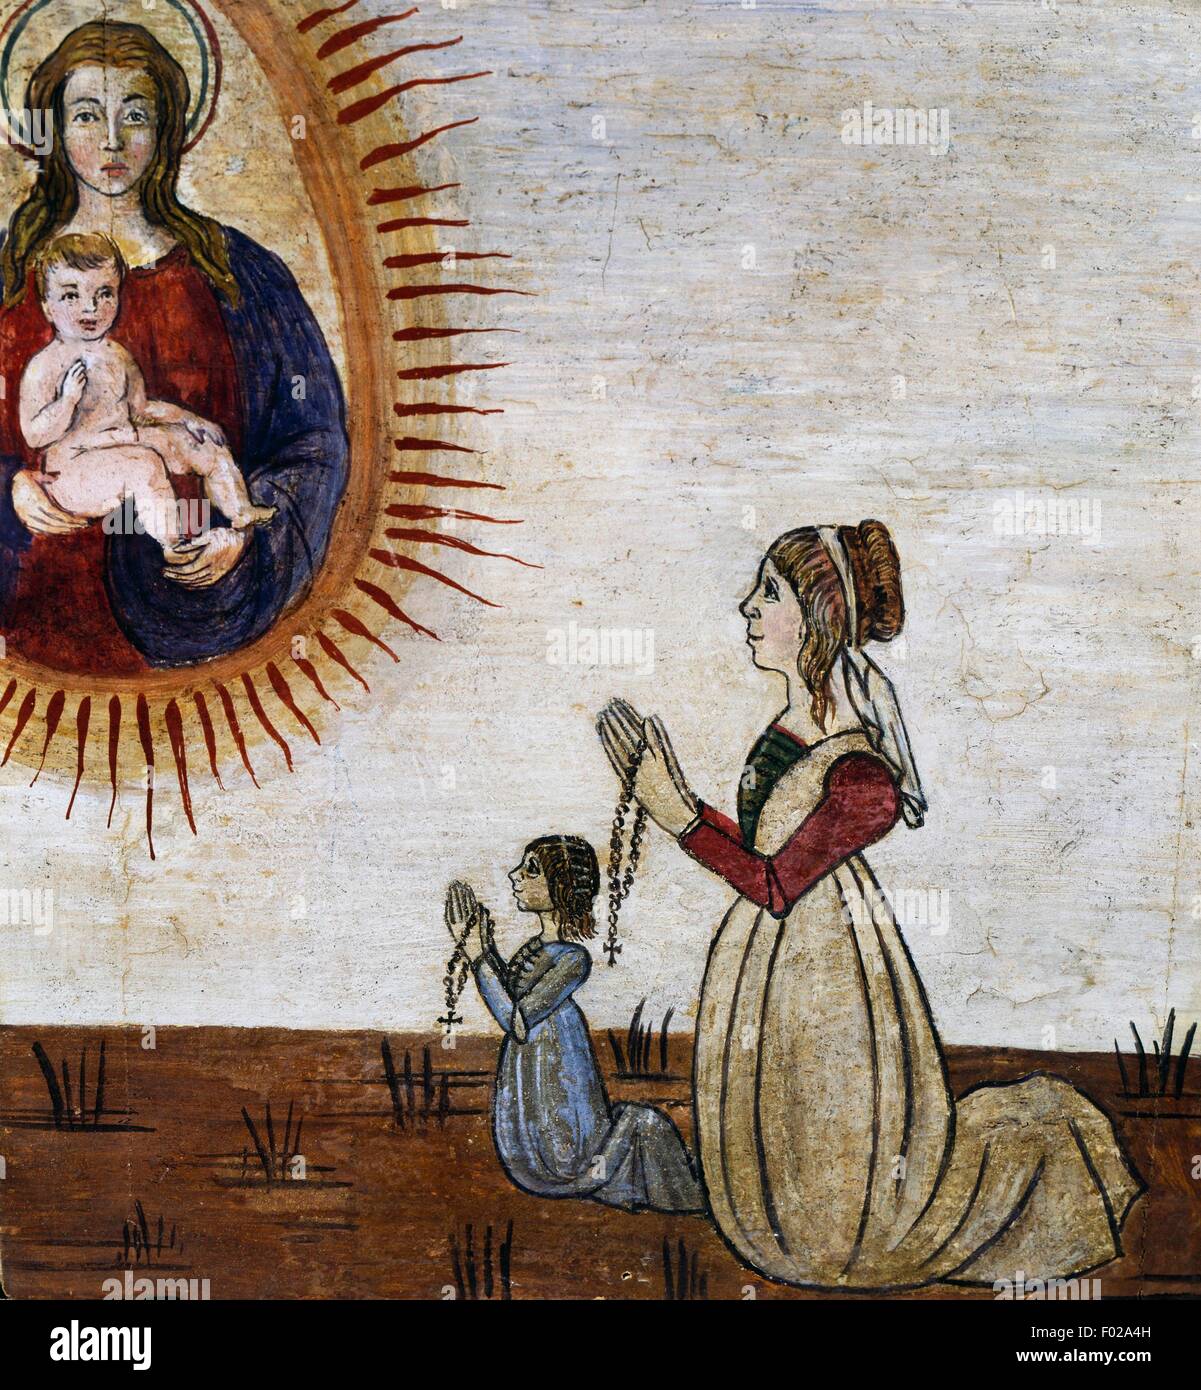 Femme avec enfant dans la prière holding rosary dans leurs mains, ex voto, Italie, 15e siècle. Banque D'Images